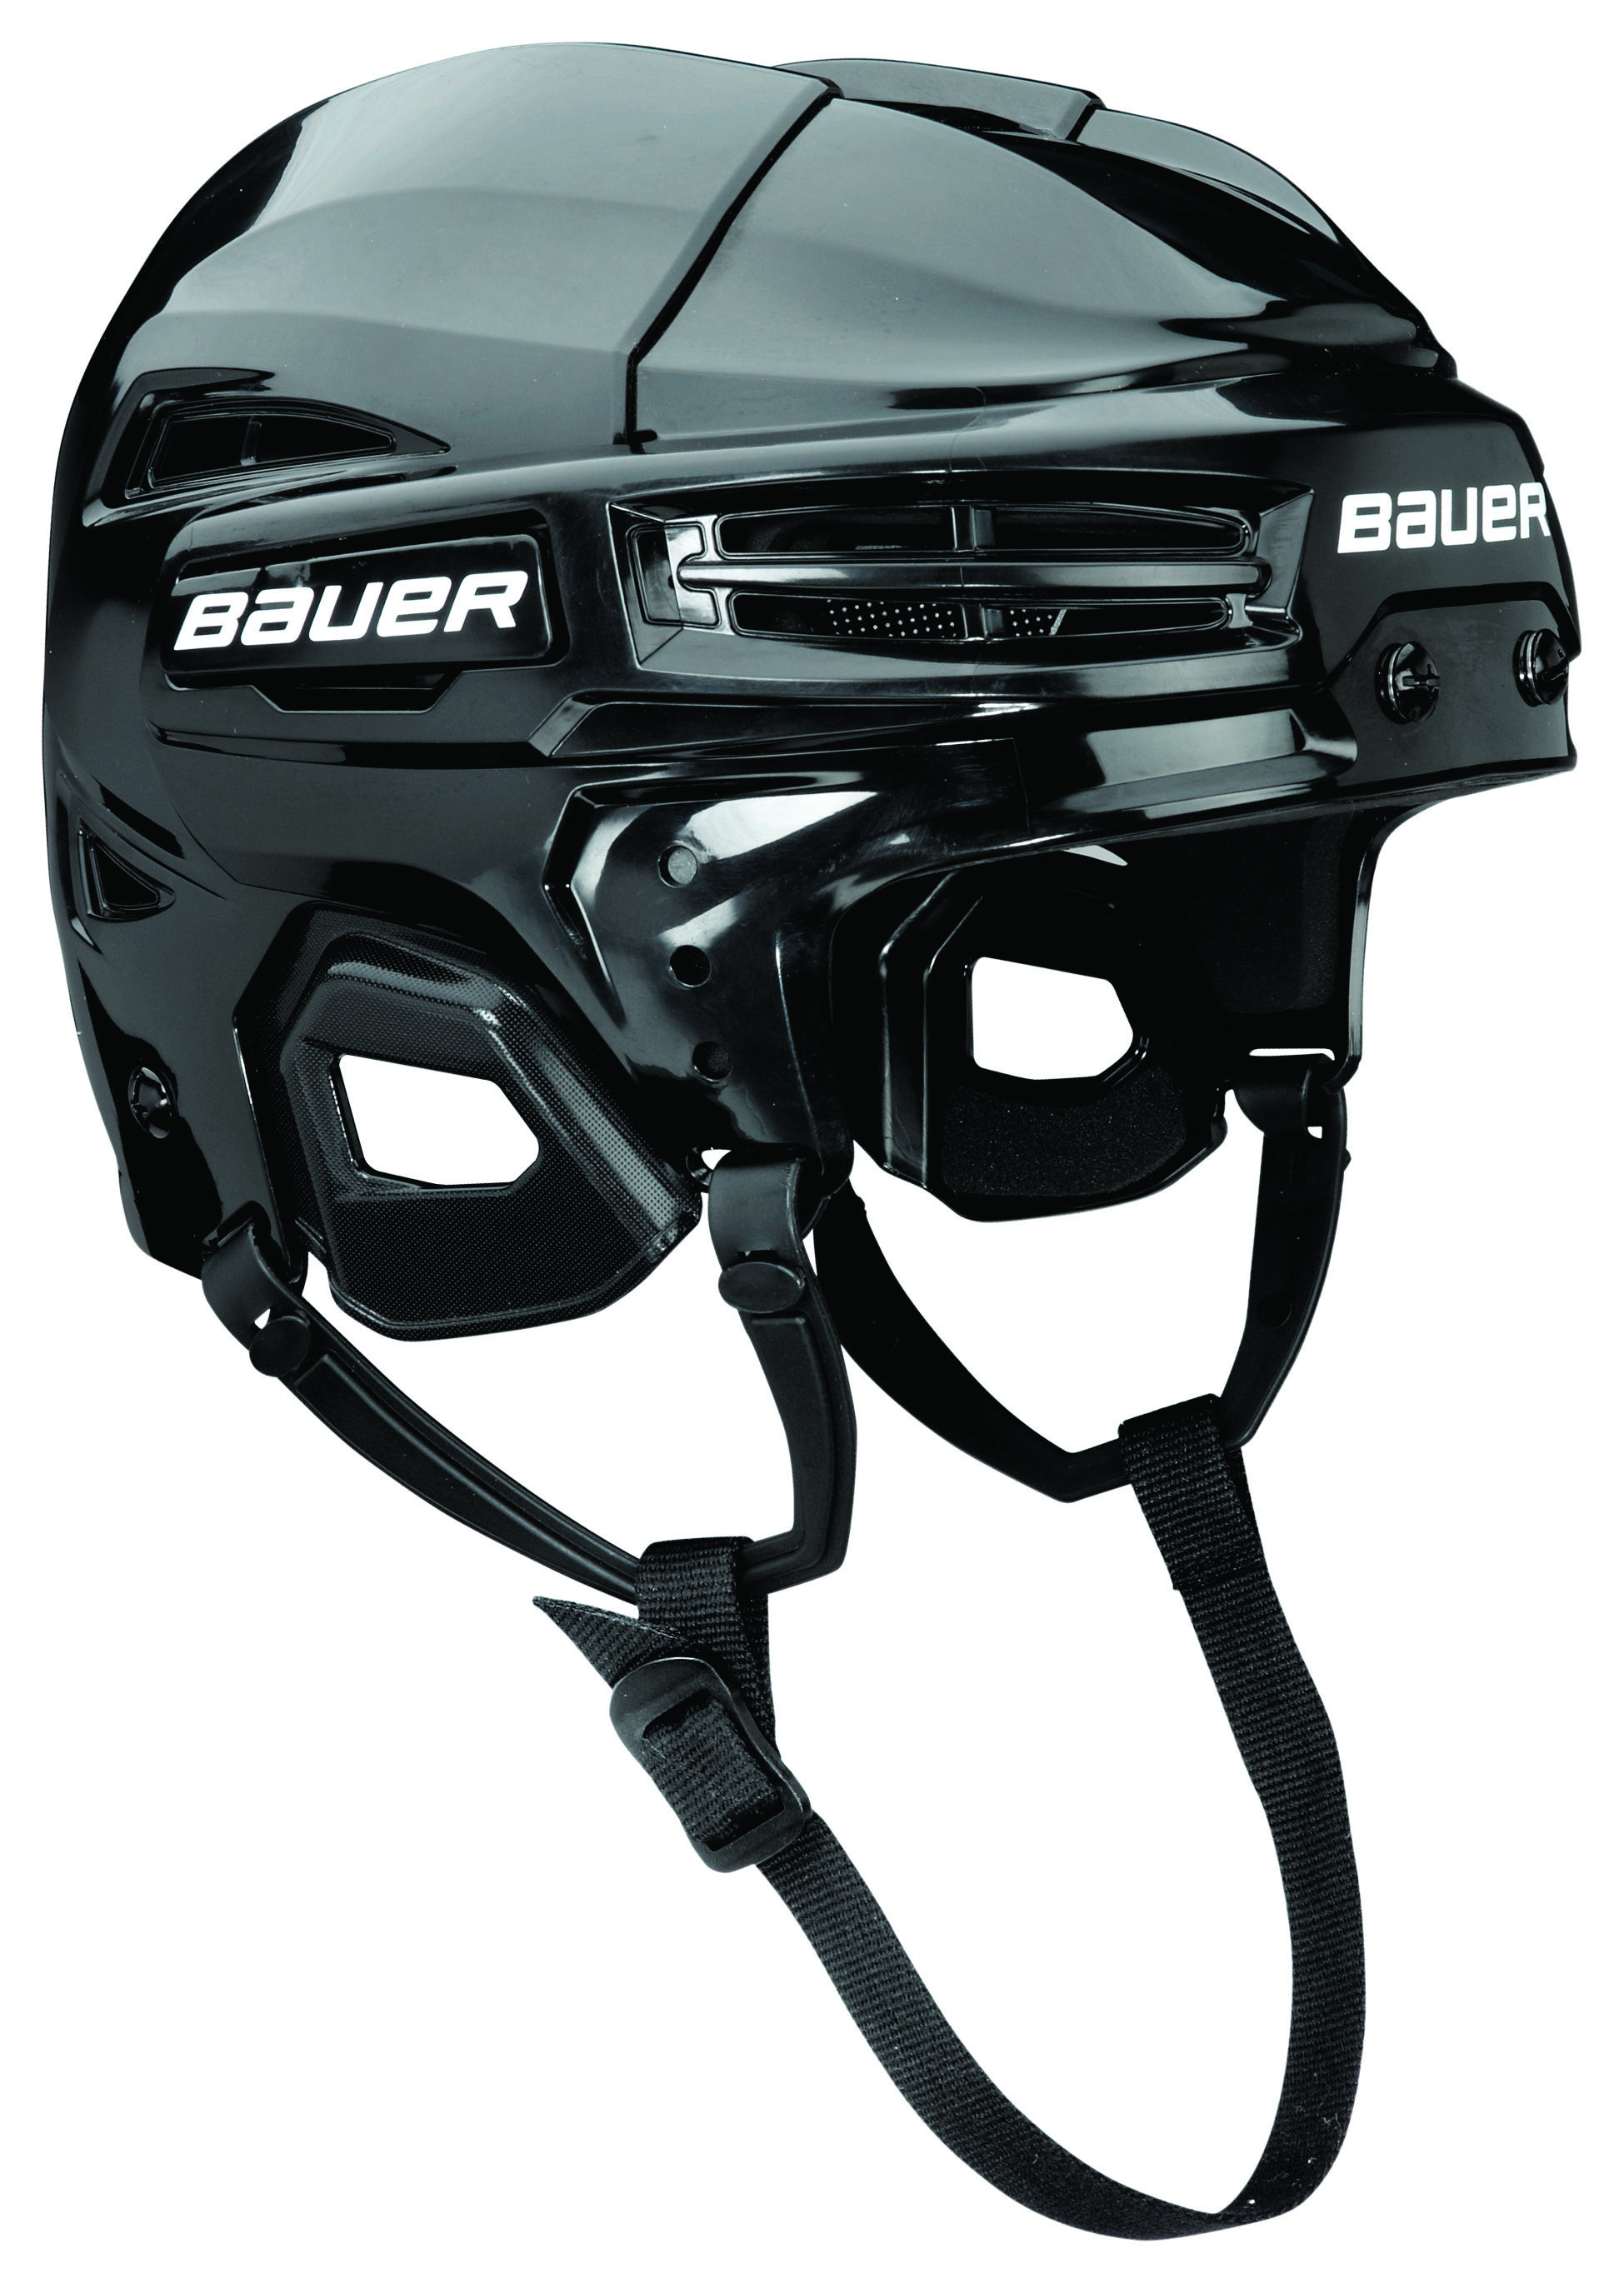 Bauer IMS 5.0 hockeyhjelm